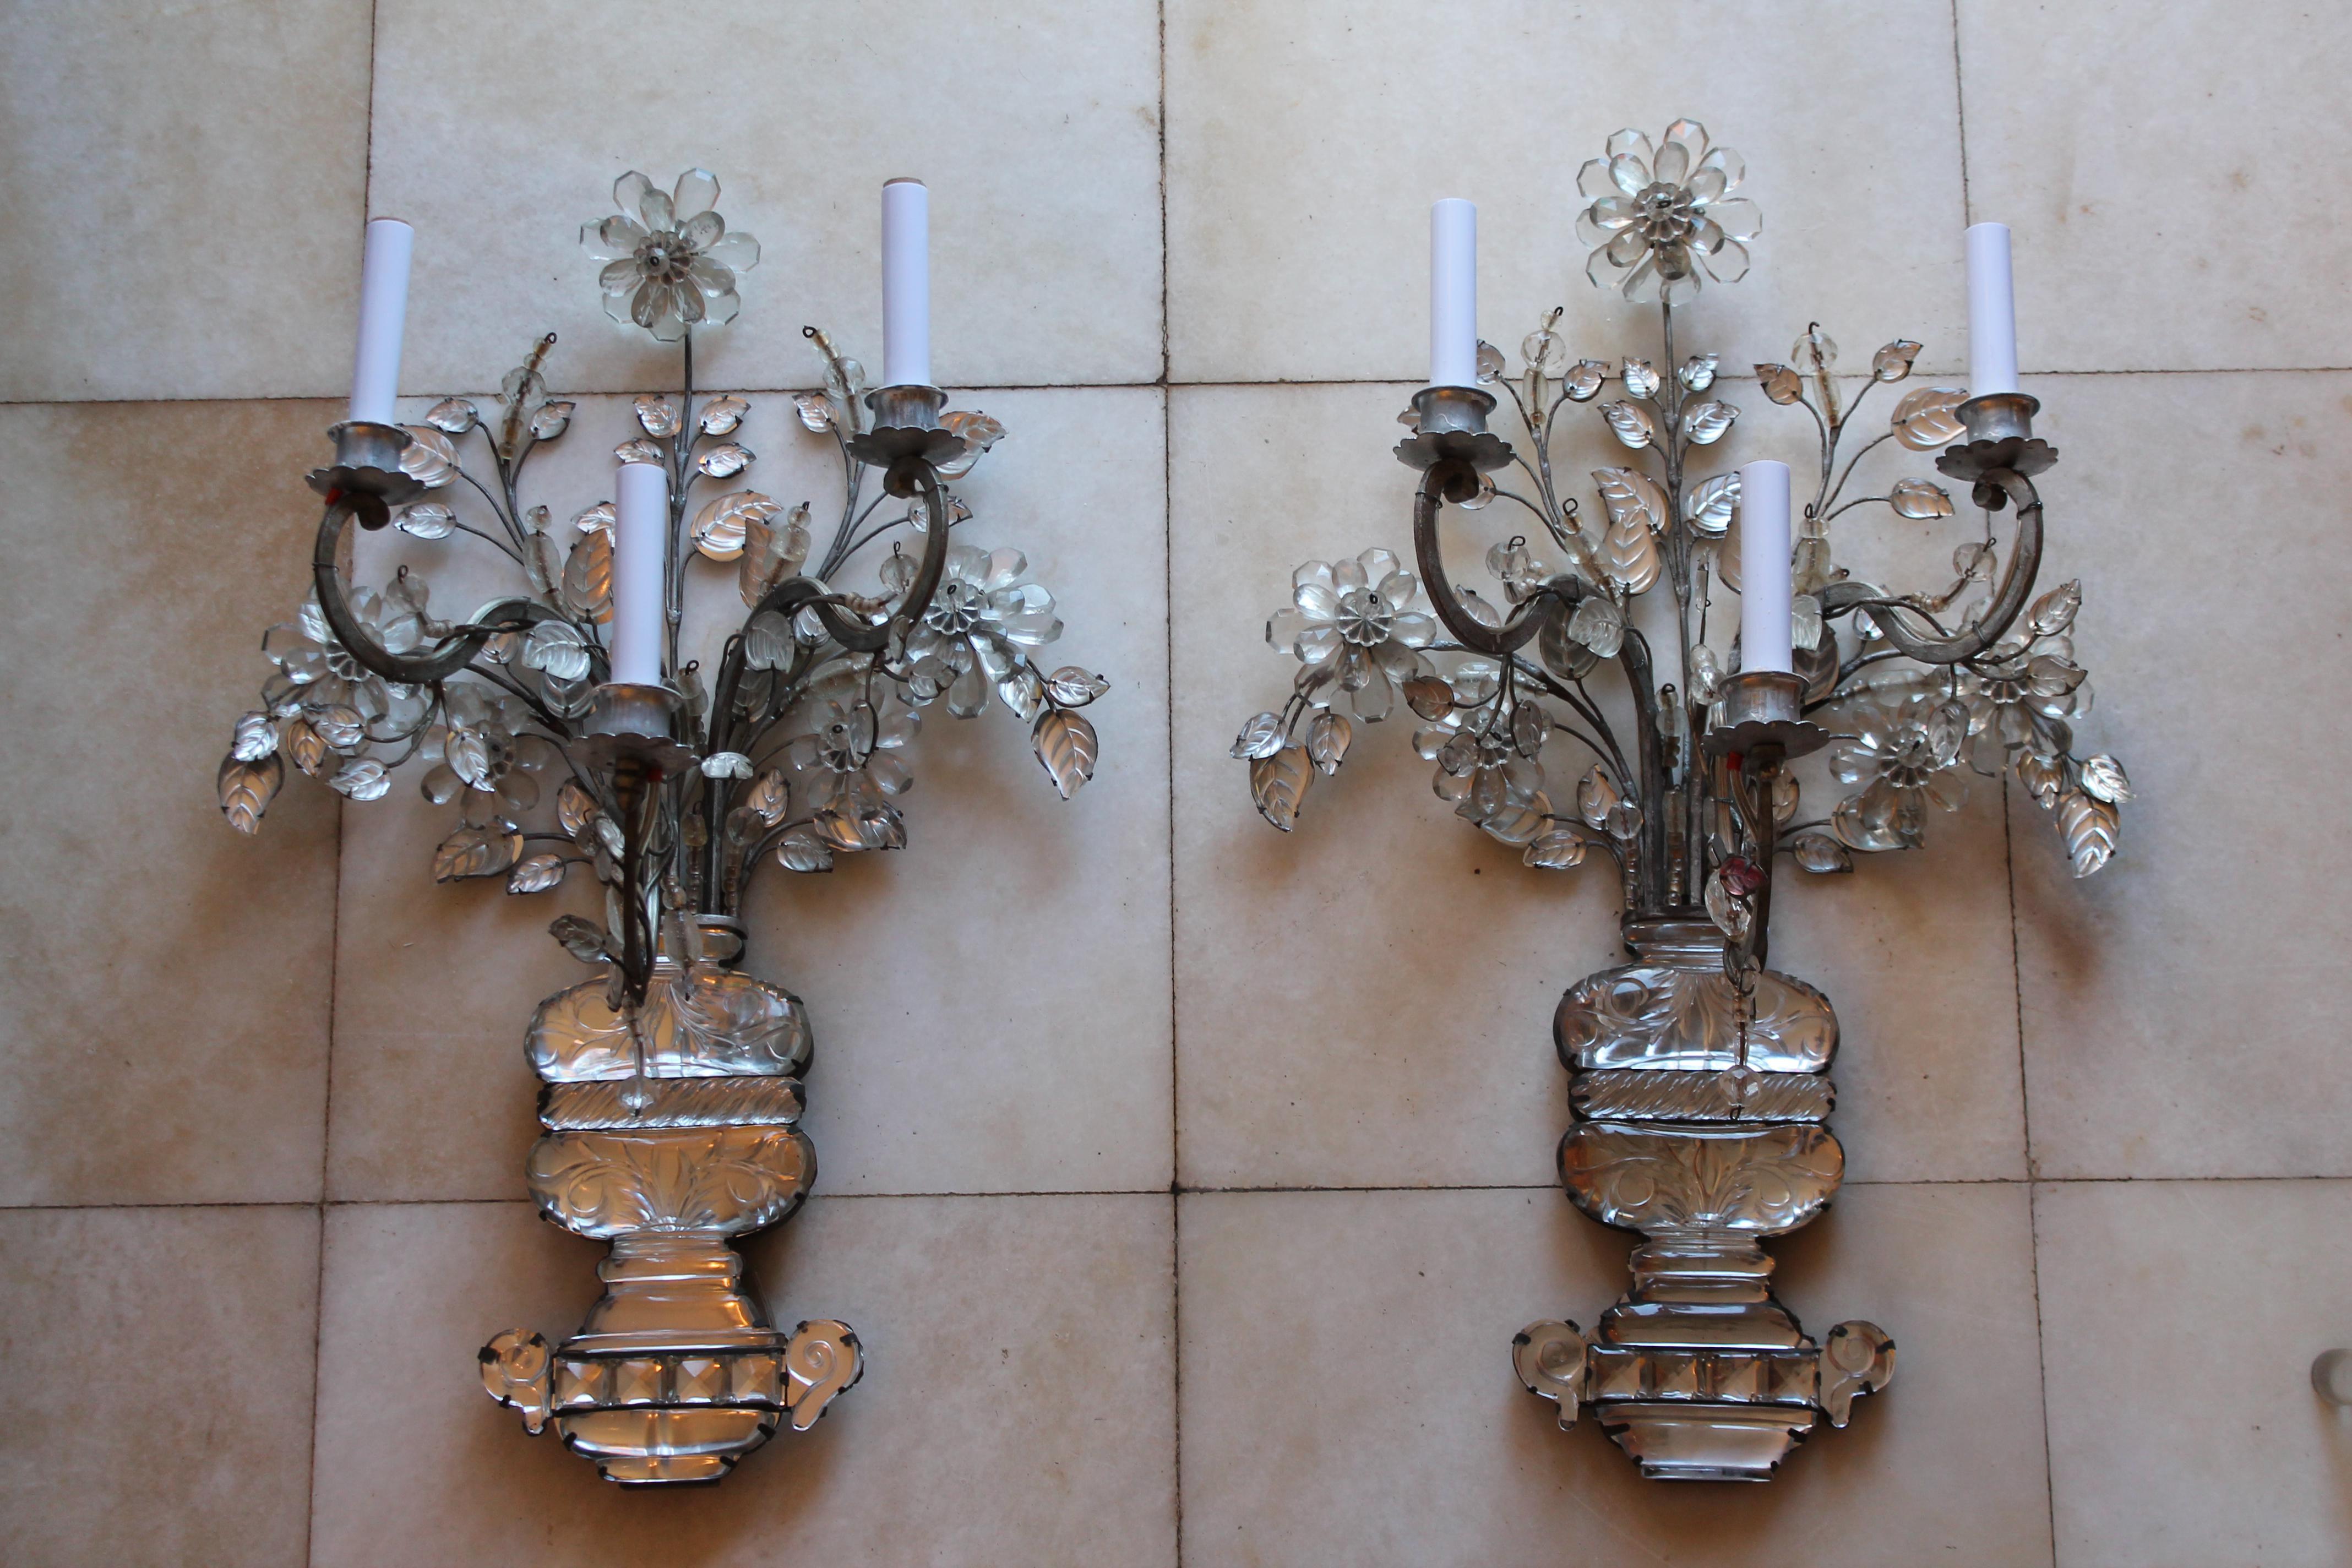 Superbe et rare paire d'appliques murales Art Nouveau en bronze/ cristal taillé Bouquet Floral XL signées par la Maison Bagues Paris. Cette signature de Bagues figure sur une plaque de bronze boulonnée au dos. Appliques de qualité muséale. Je les ai